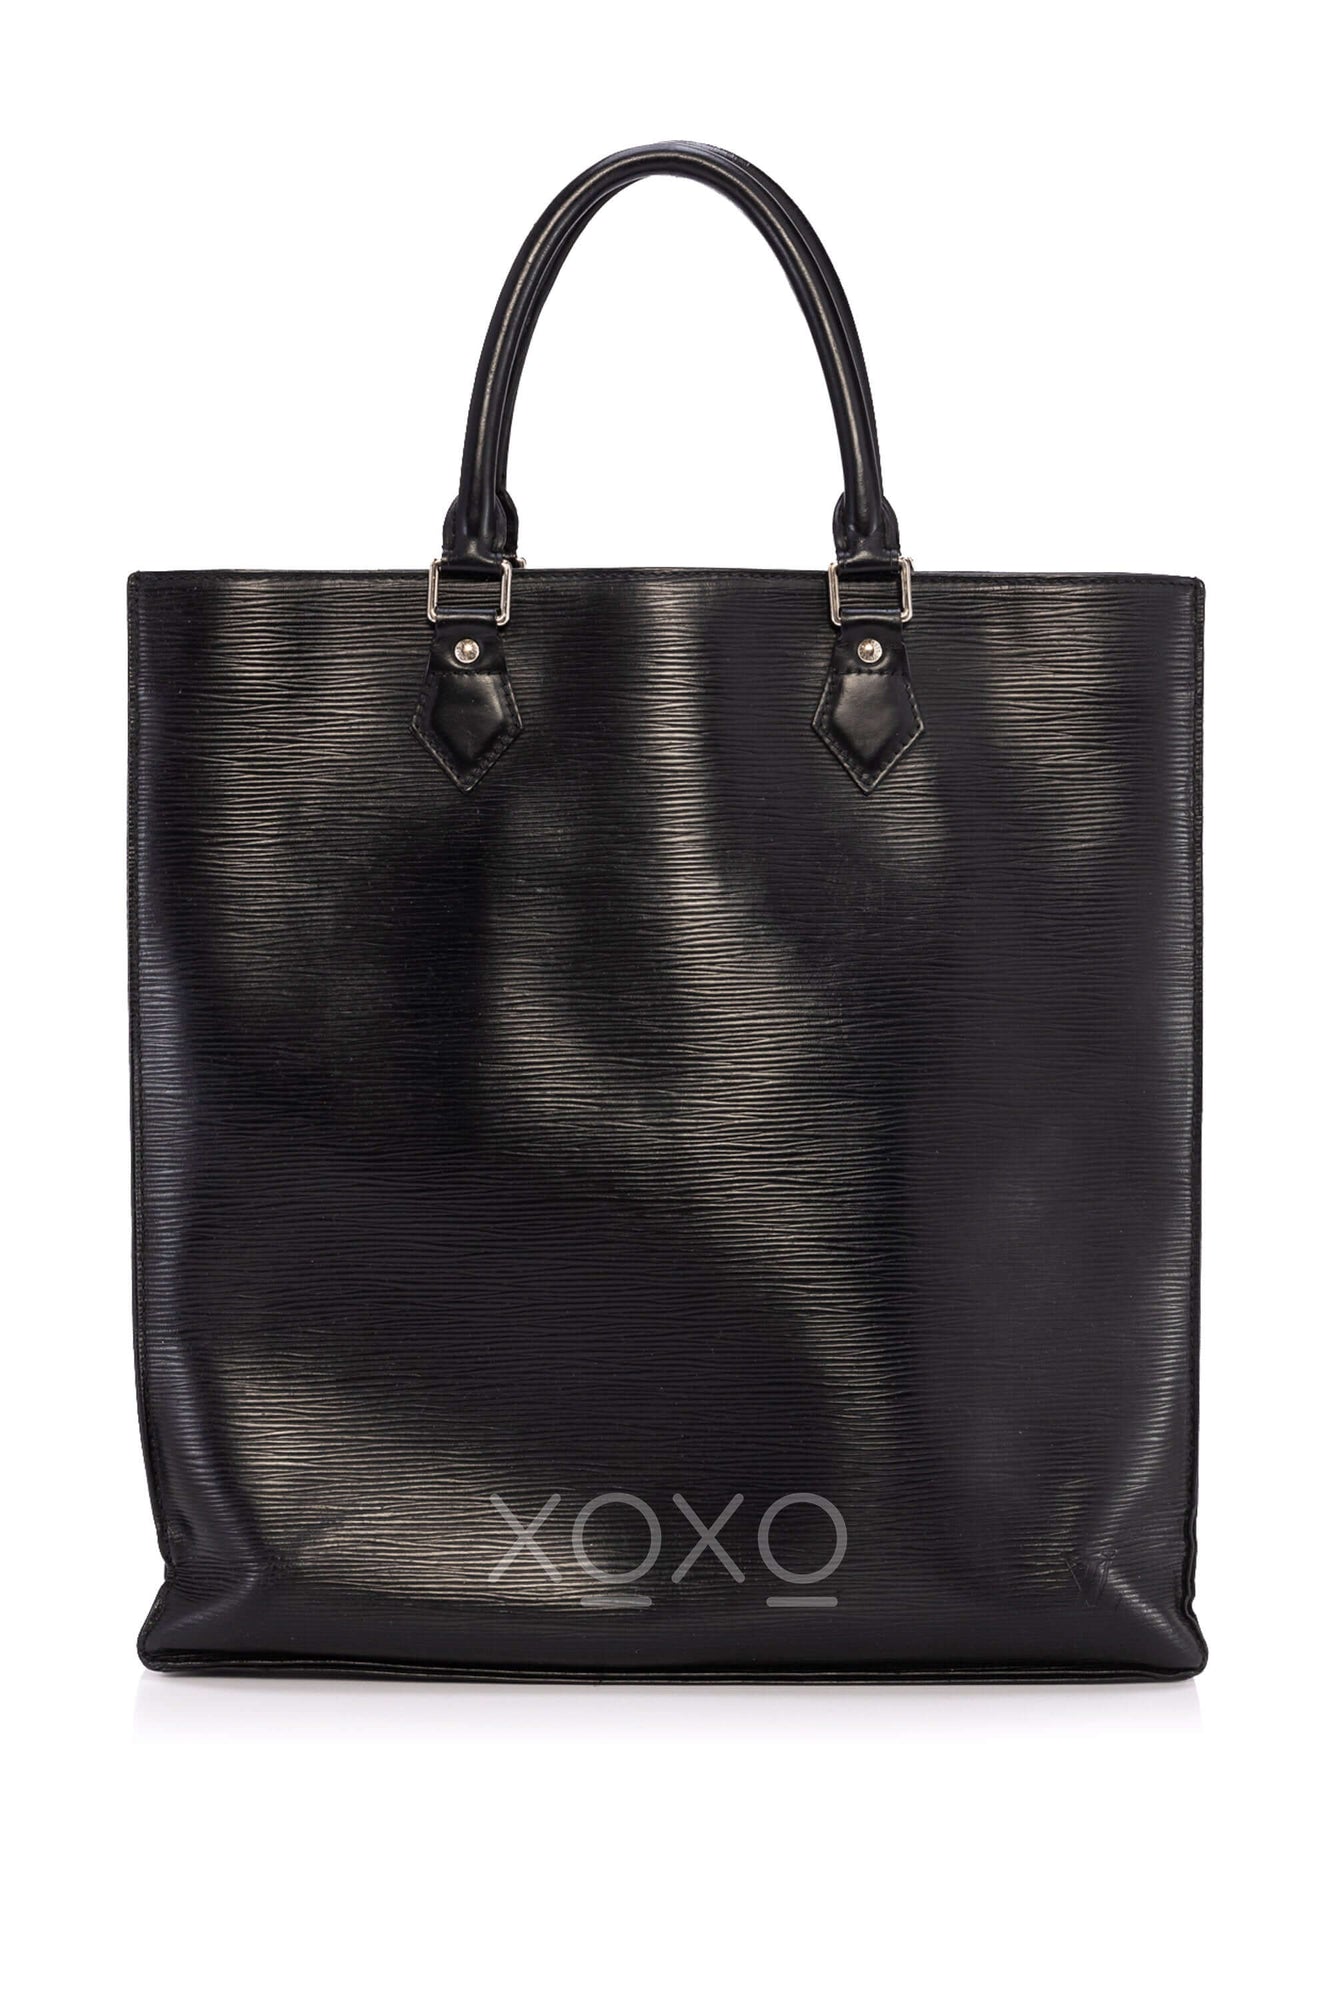 Louis Vuitton Kleber MM Epi Honey Gold/Black Leather Tote Bag Authent. NO  STRAP